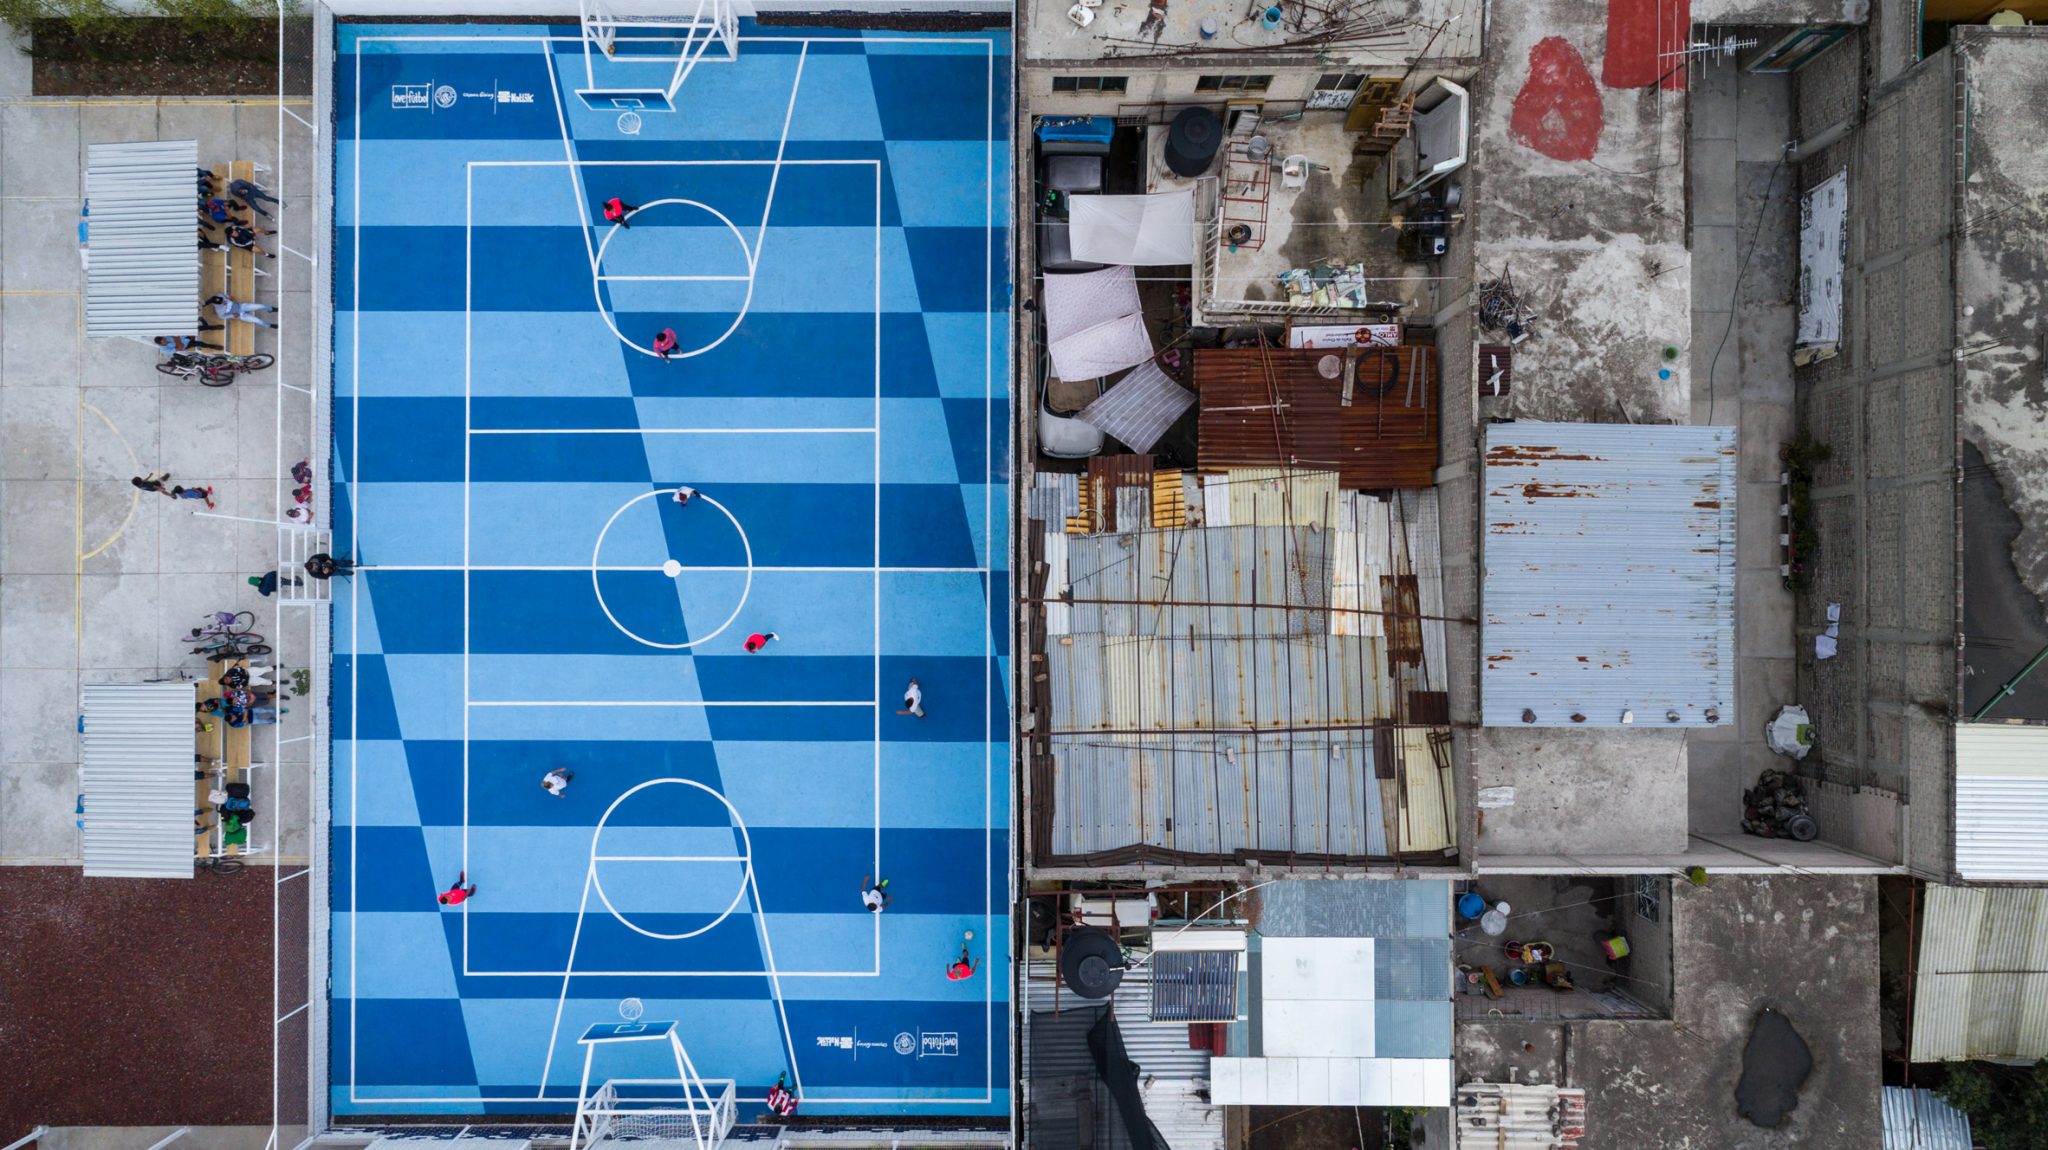 สนามกีฬาสีสดใส..เปลี่ยนพื้นที่ว่างในสลัมให้เป็นพื้นที่สร้างสรรค์ของชุมชนในเม็กซิโกซิตี้